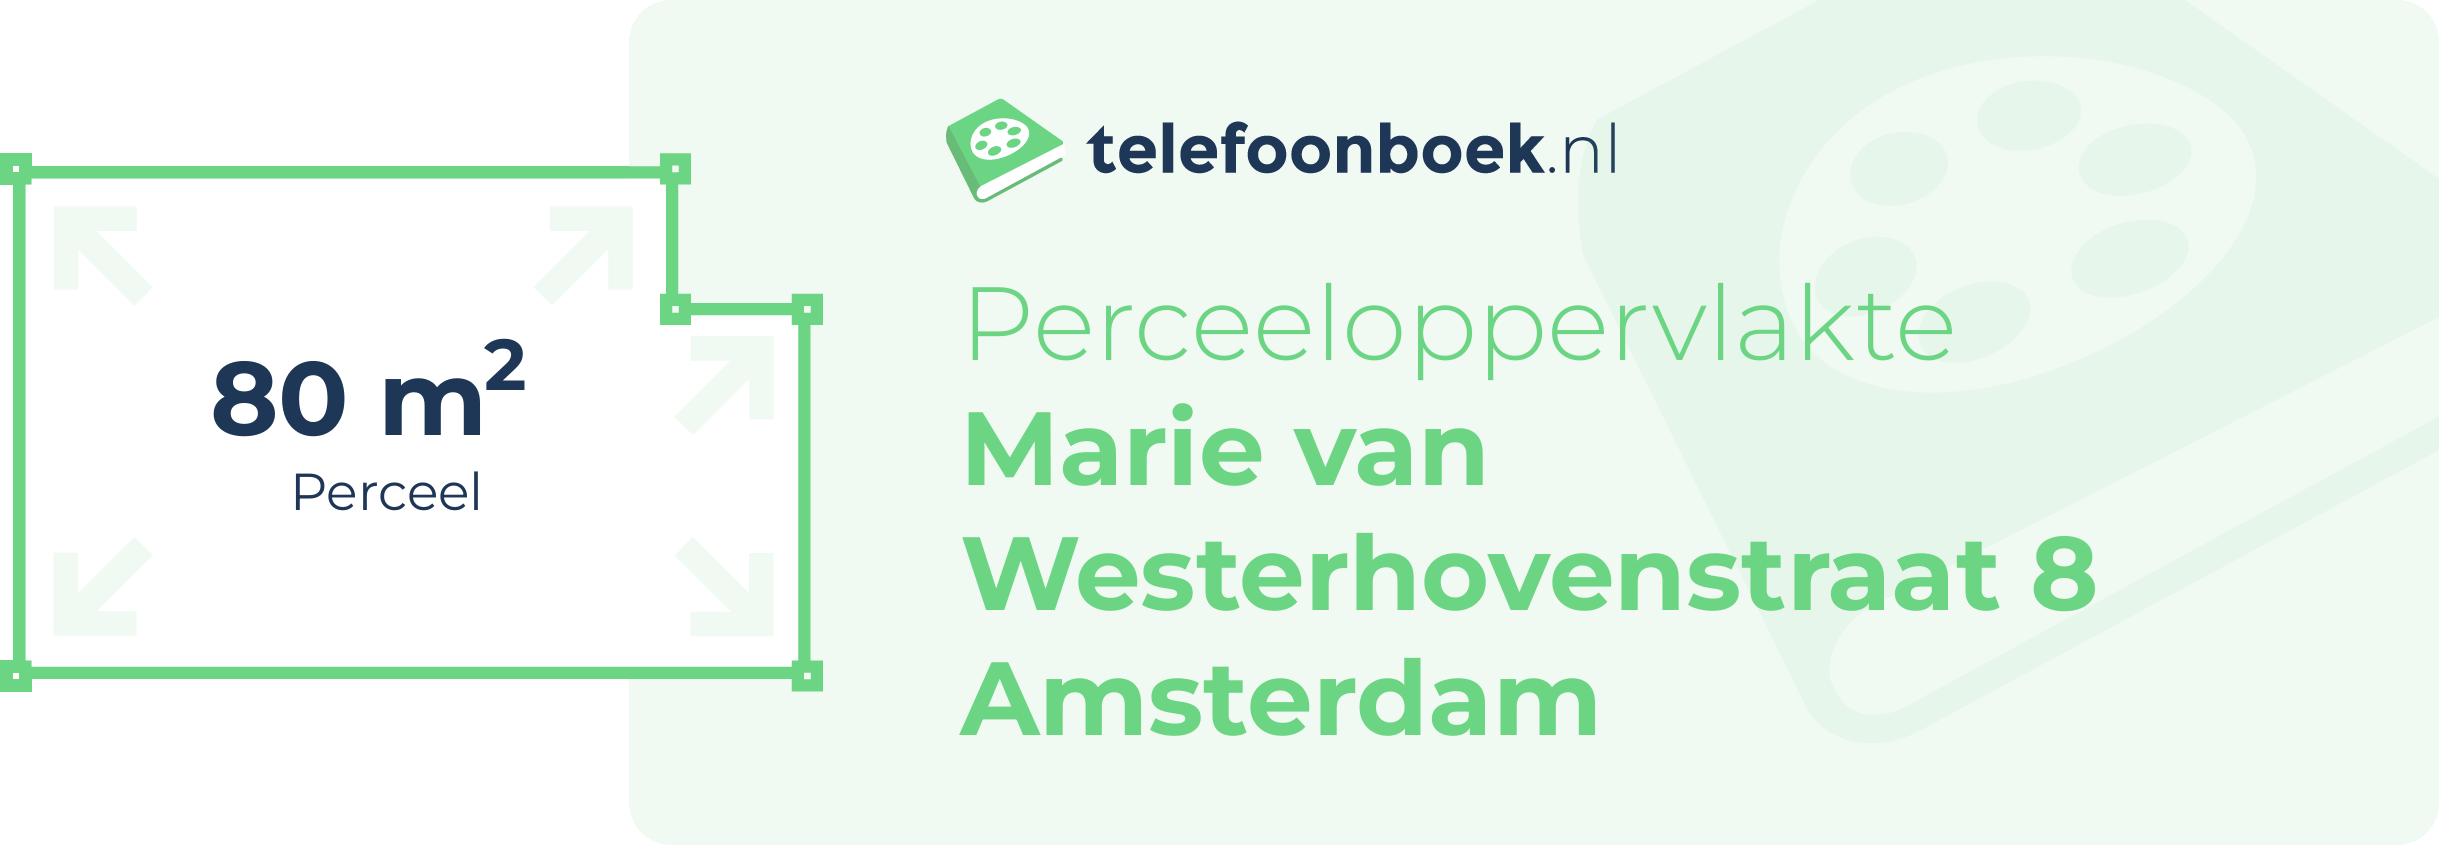 Perceeloppervlakte Marie Van Westerhovenstraat 8 Amsterdam